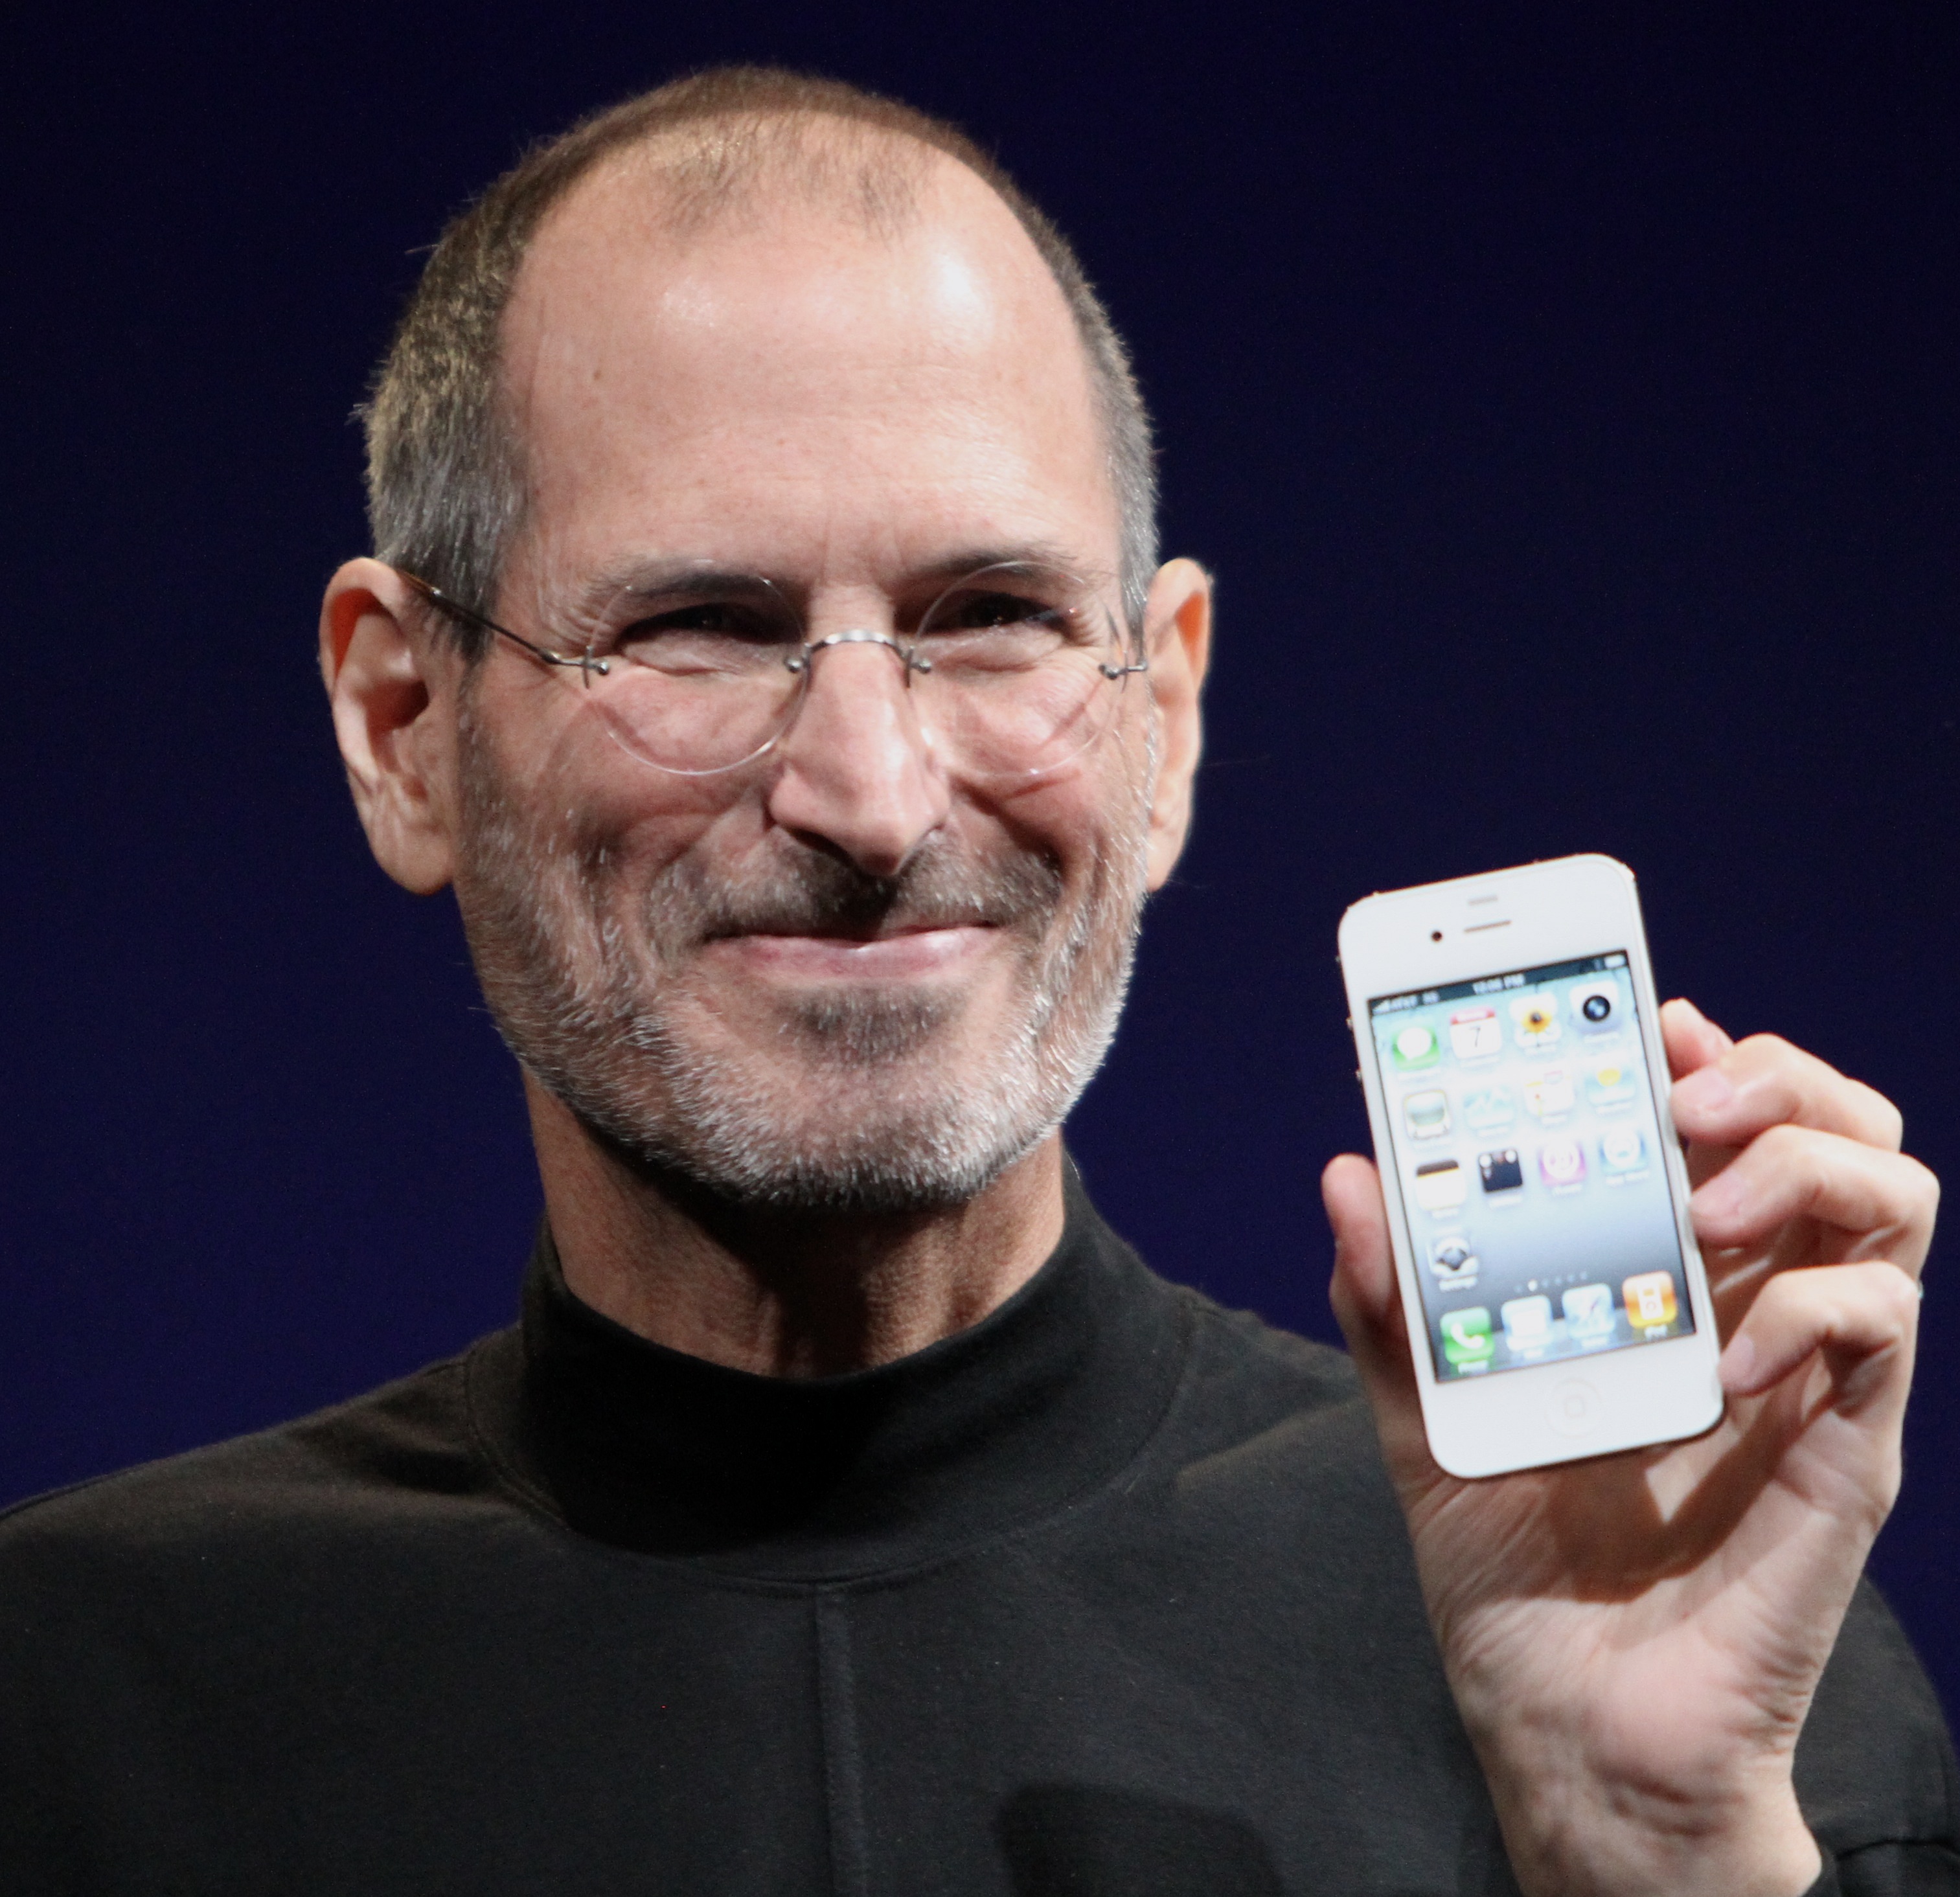 เปิดผนึก! สตีฟ จ็อบส์ฝันอยากทำ “iPhone Nano” ราคาประหยัดสำหรับทุกคน